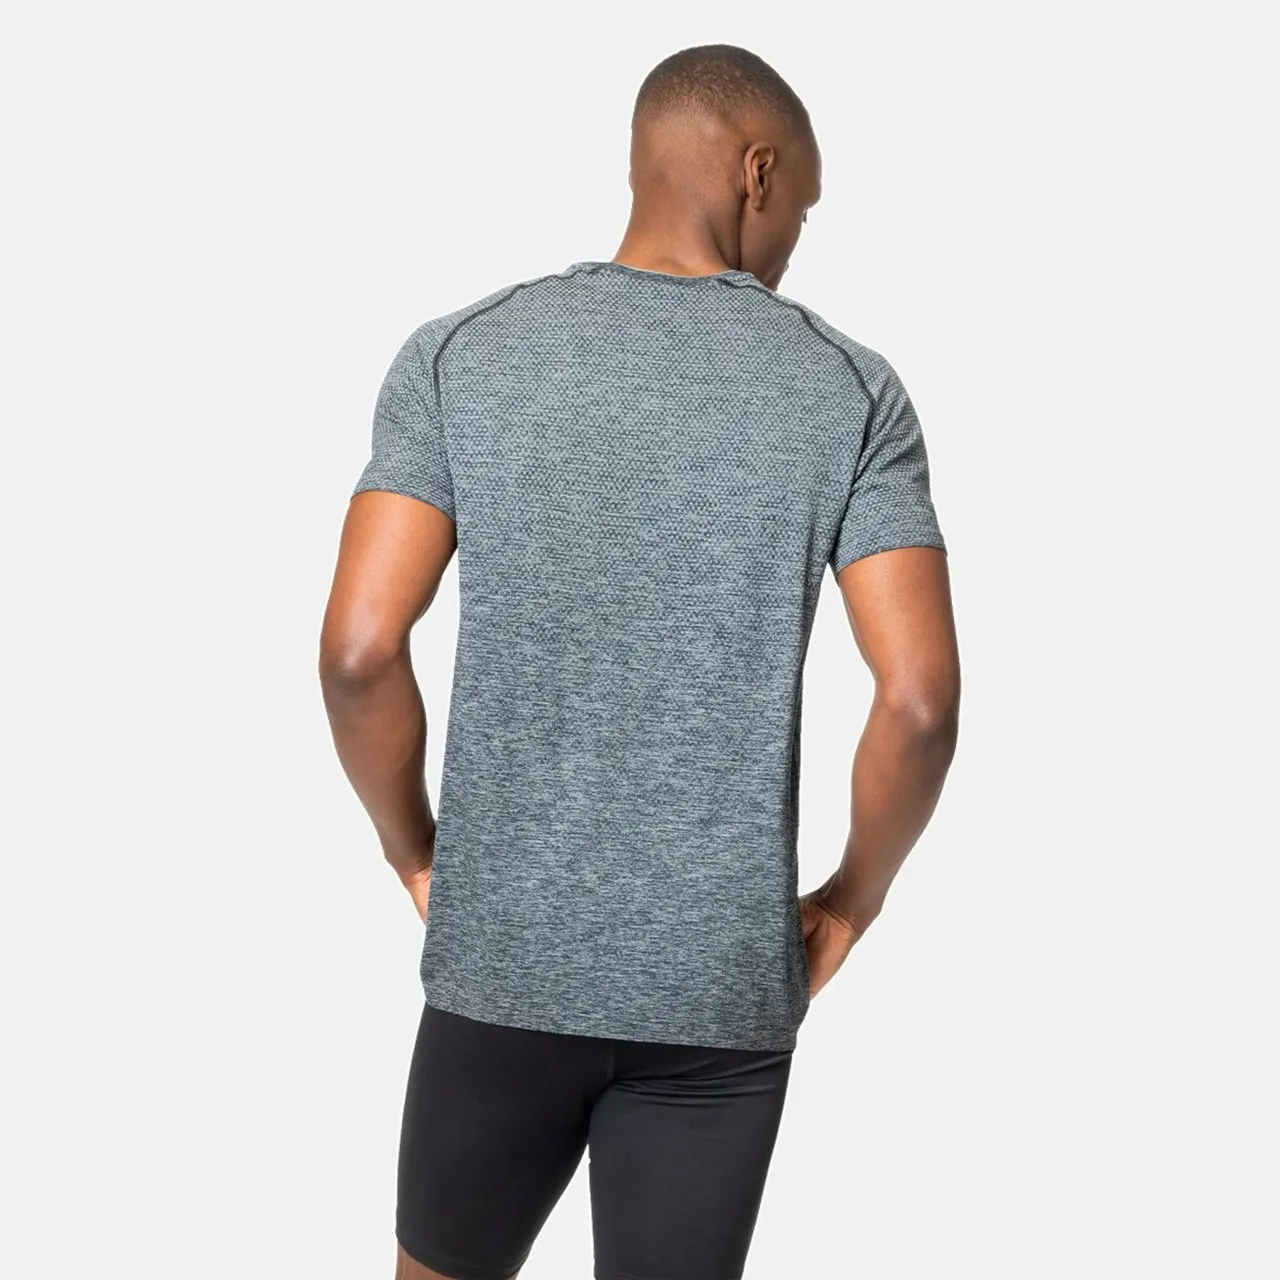 Odlo T-shirt crew neck s/s essential seamless